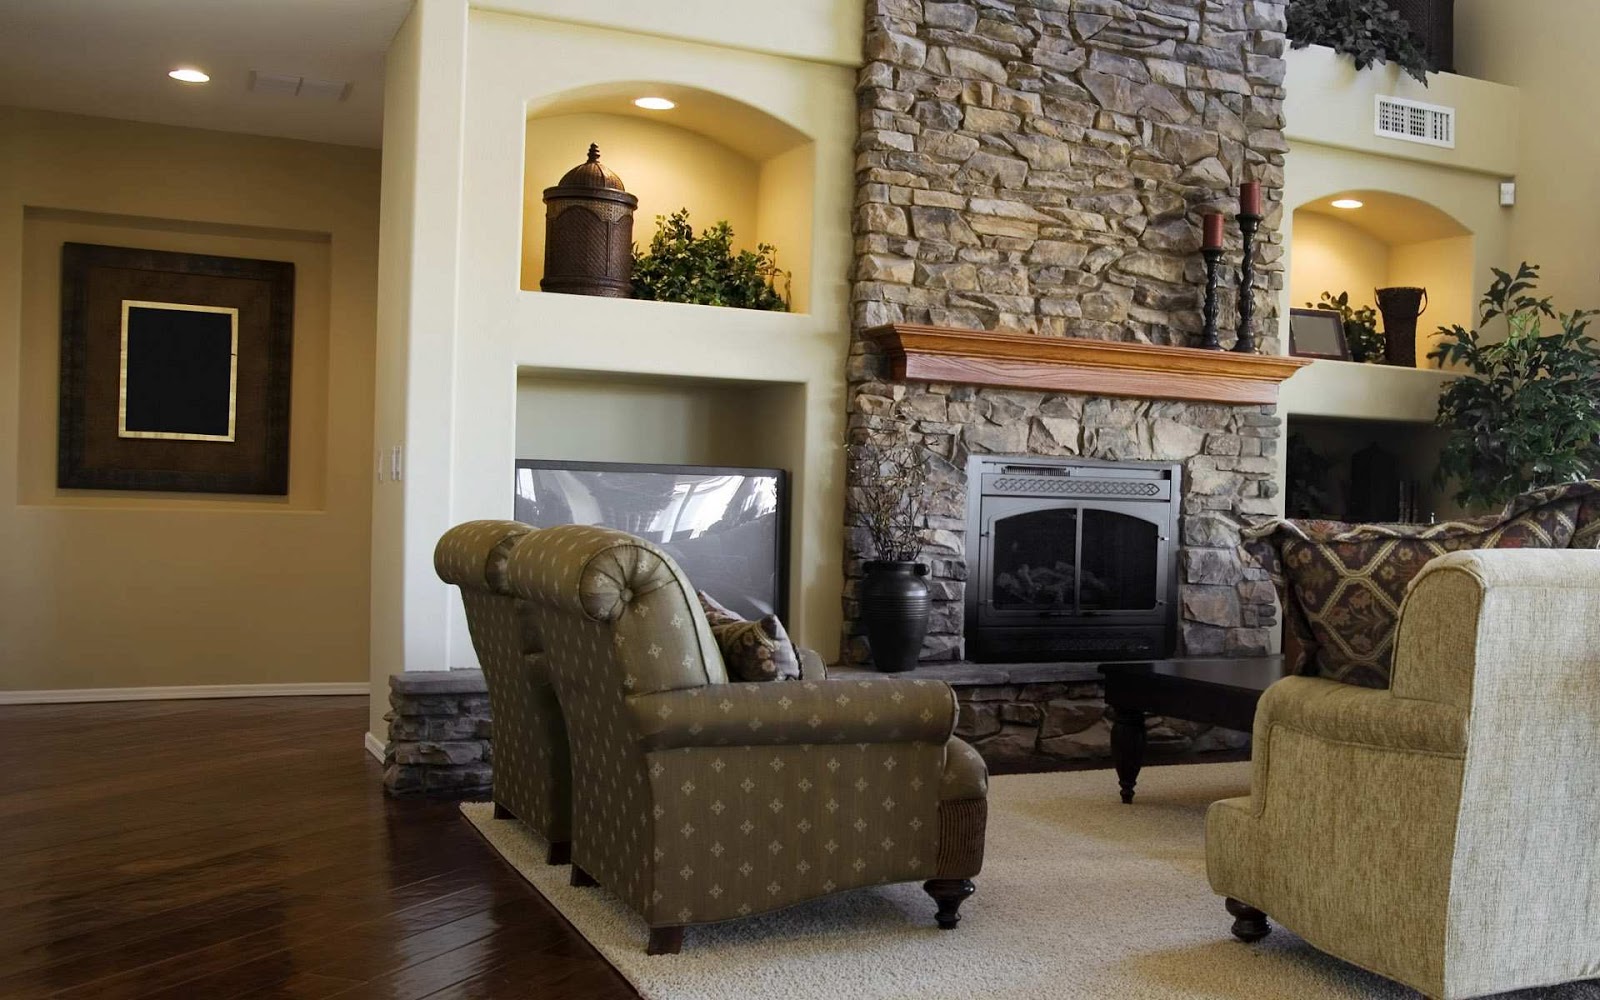 Home Interior and Exterior Design: January 2014